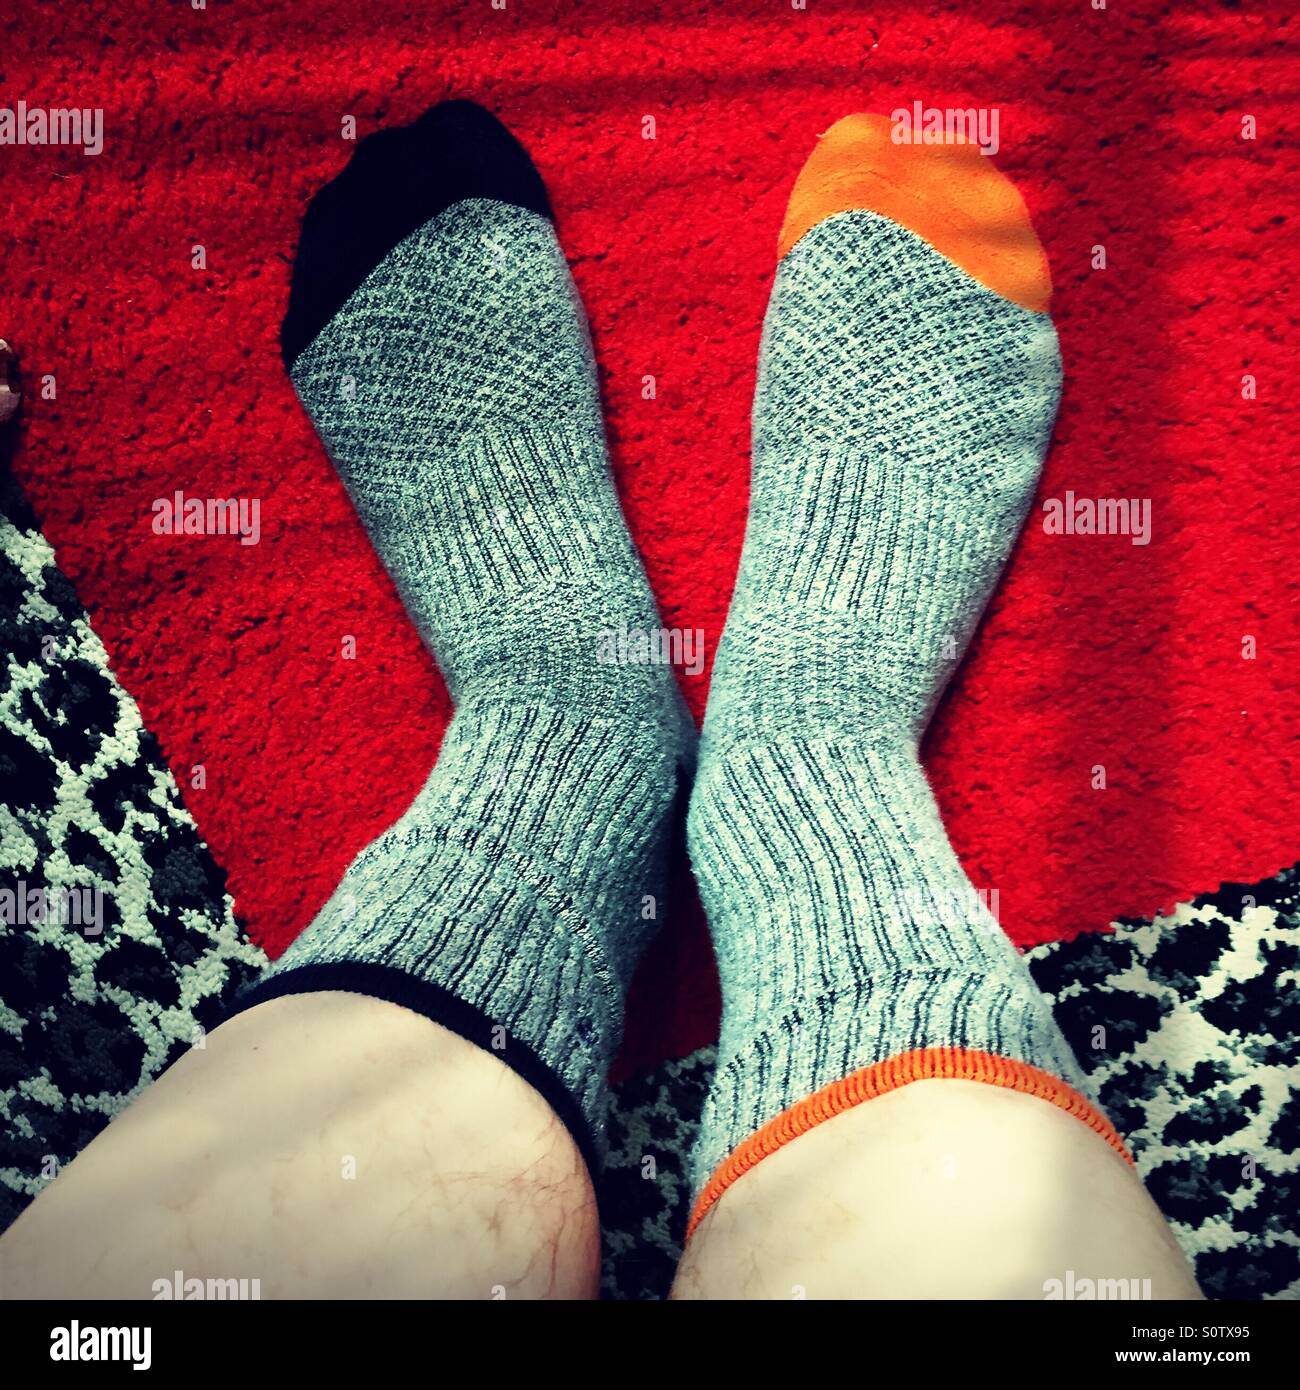 Hombre que llevaba calcetines gris no coincidentes con el azul y el naranja los dedos de los pies sobre una alfombra de leopardo y cuadrado rojo Foto de stock